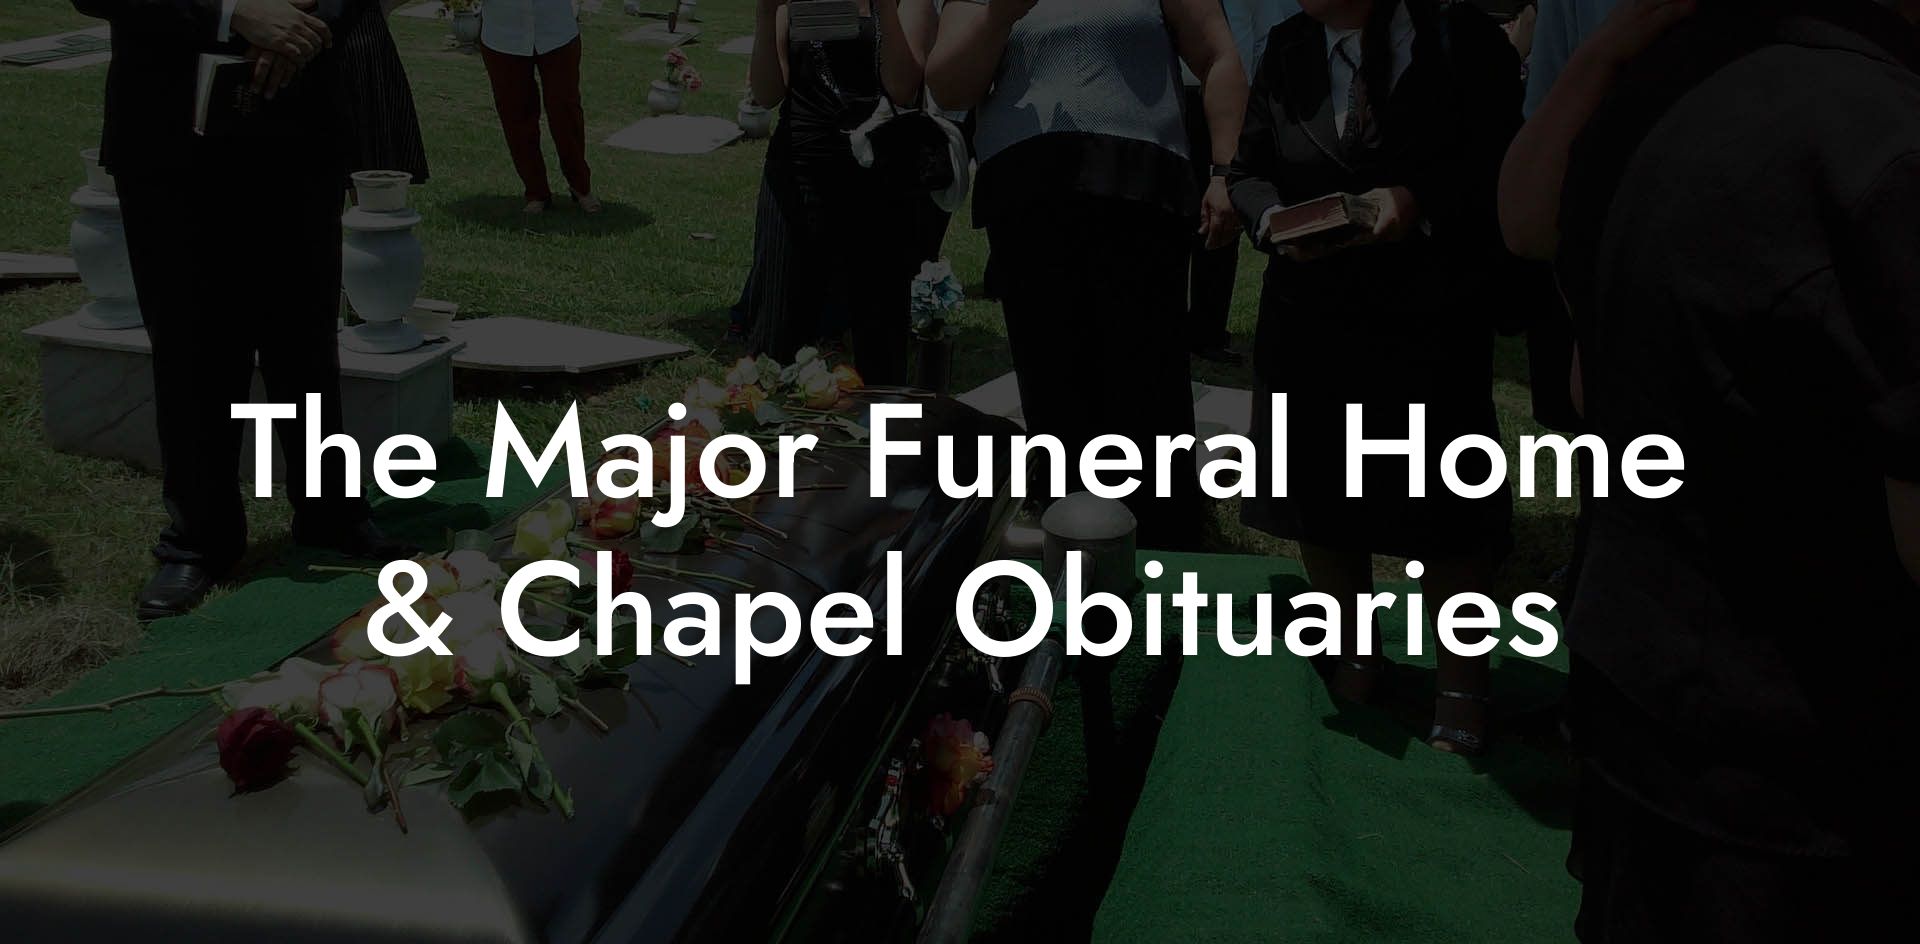 The Major Funeral Home & Chapel Obituaries